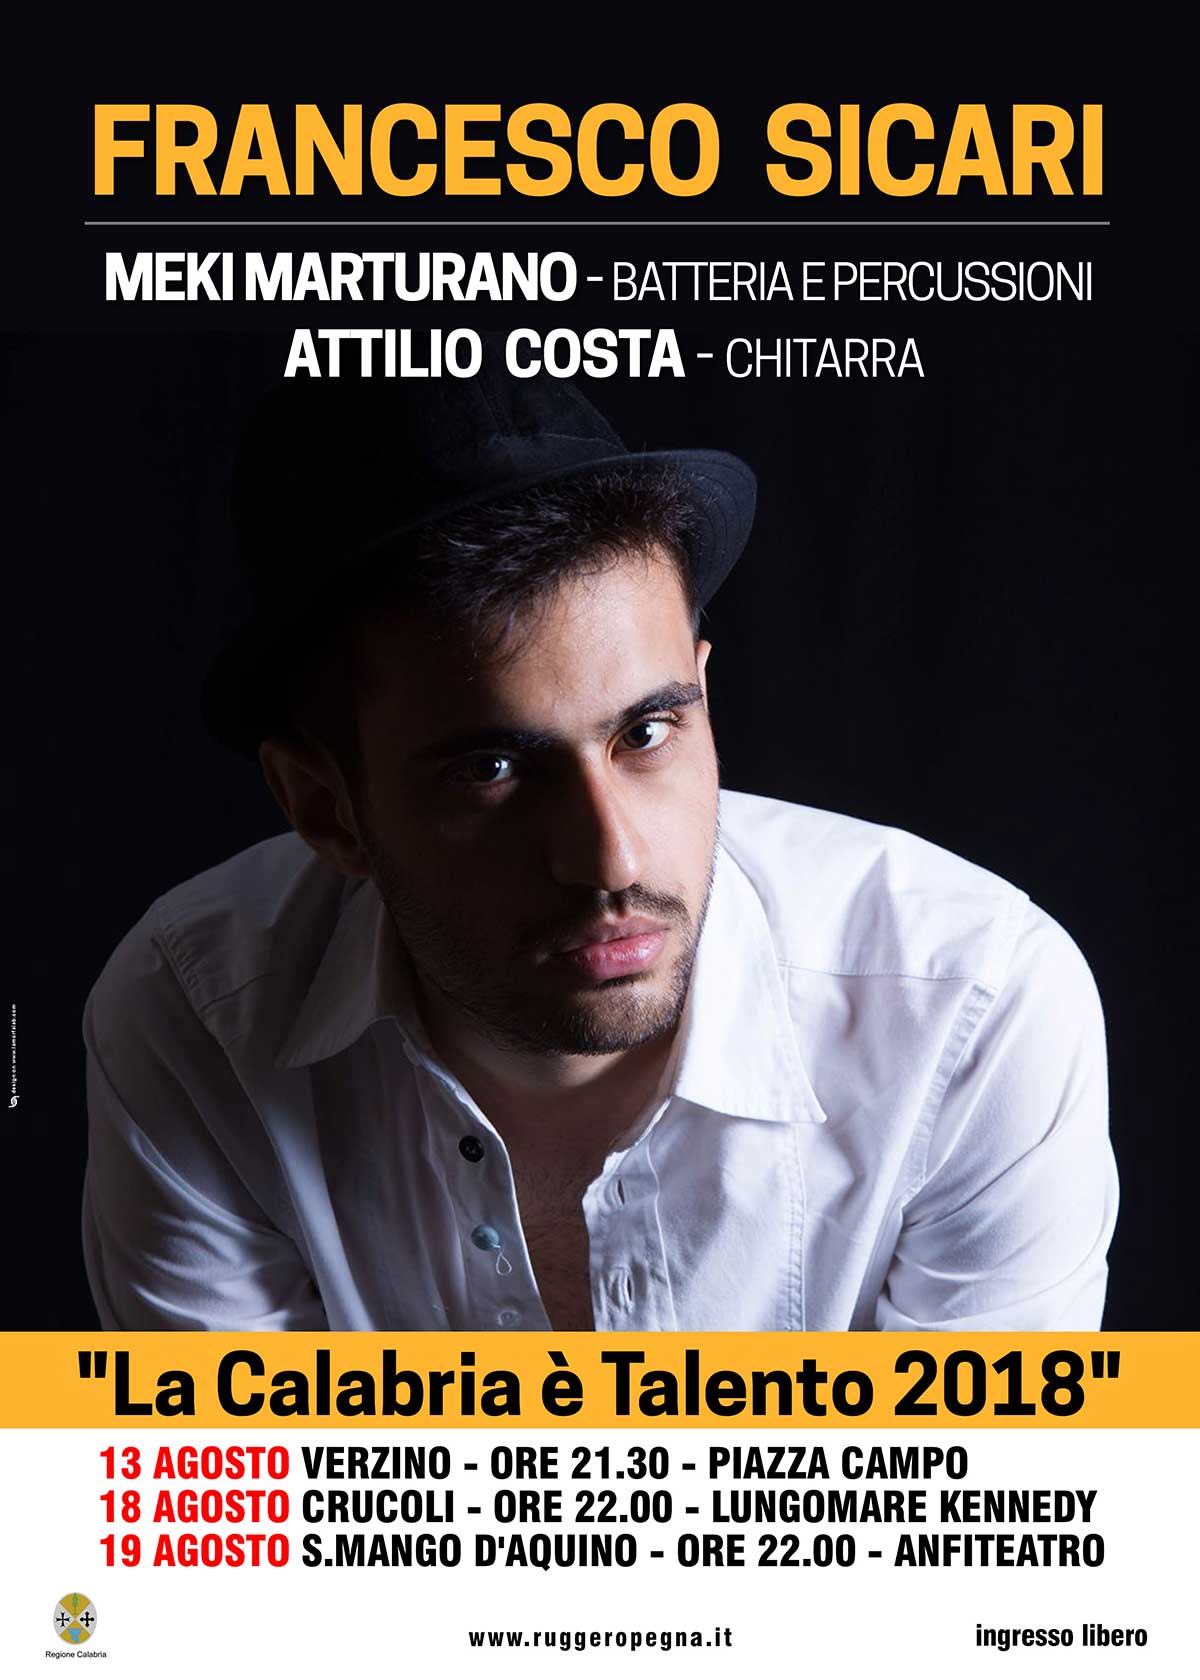 La Calabria e Talento 2018 Francesco sicari date agosto